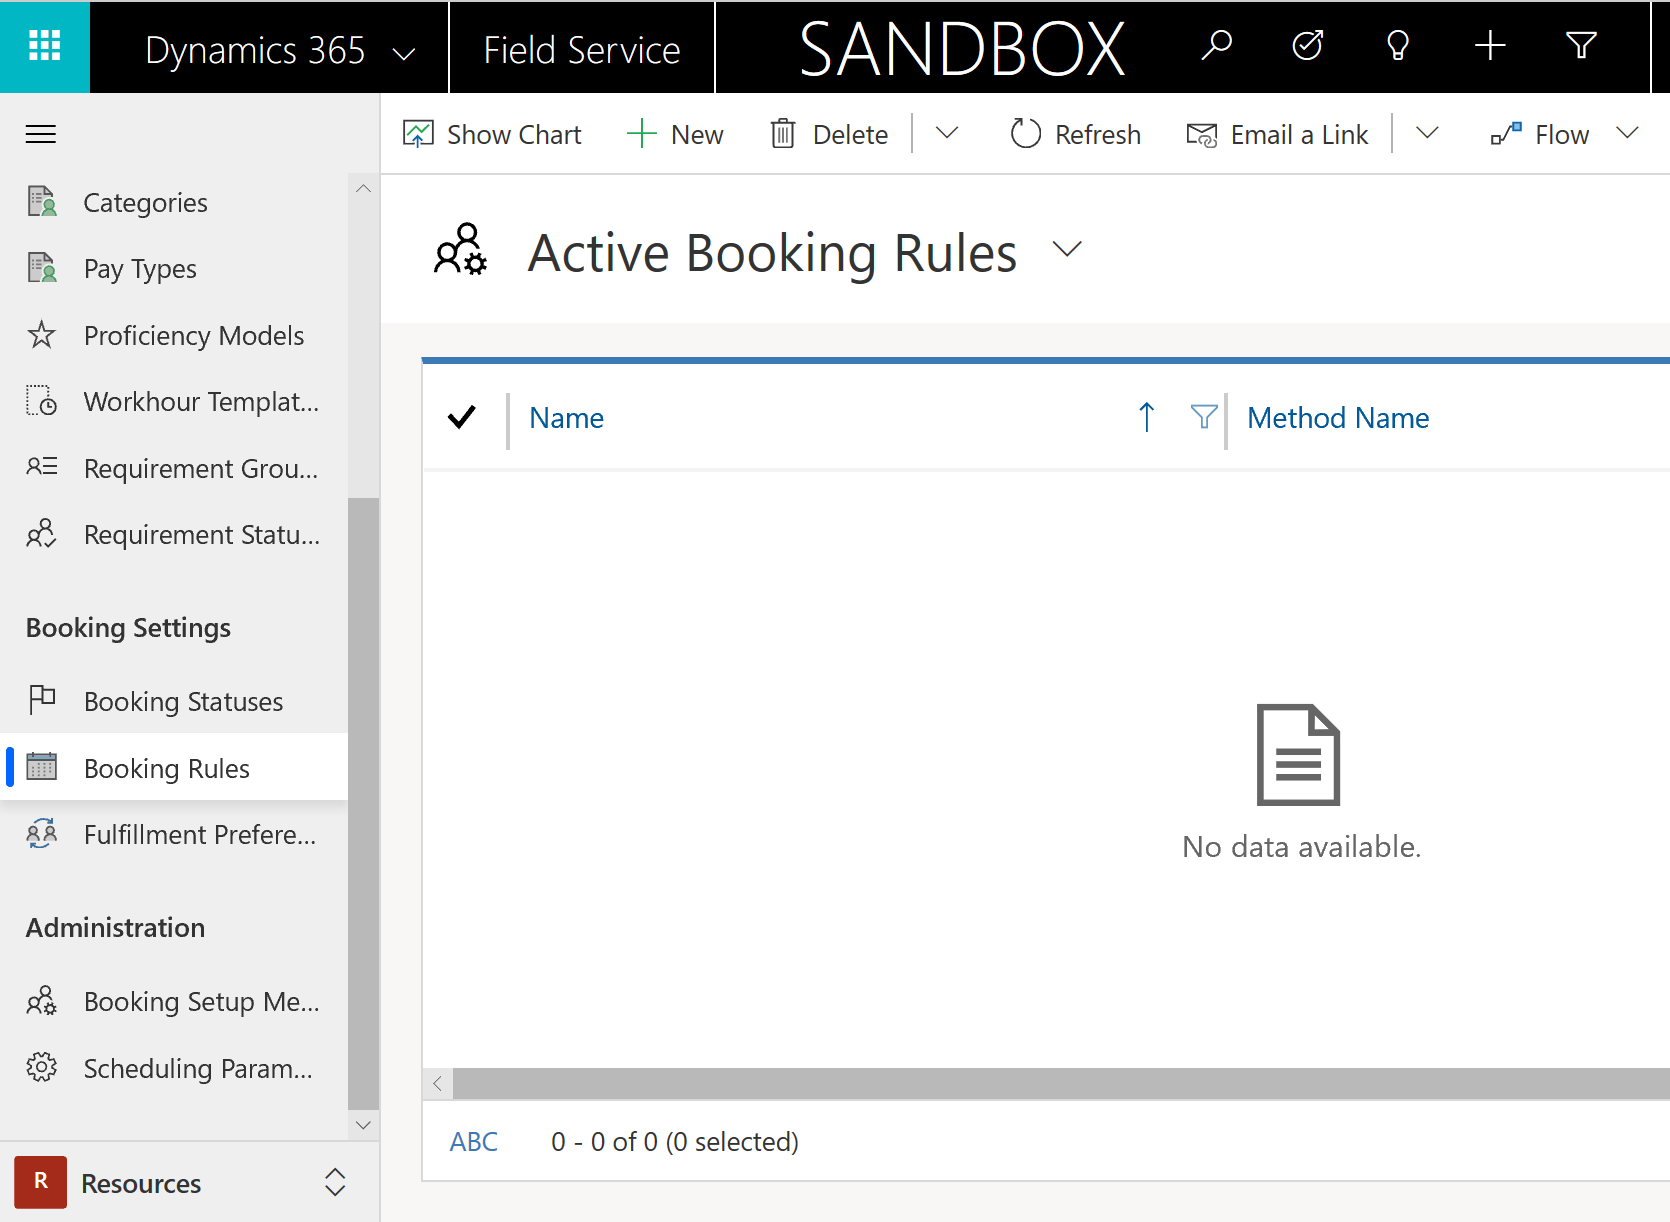 Képernyőkép az aktív foglalási szabályok listájáról a Field Service szolgáltatásban.